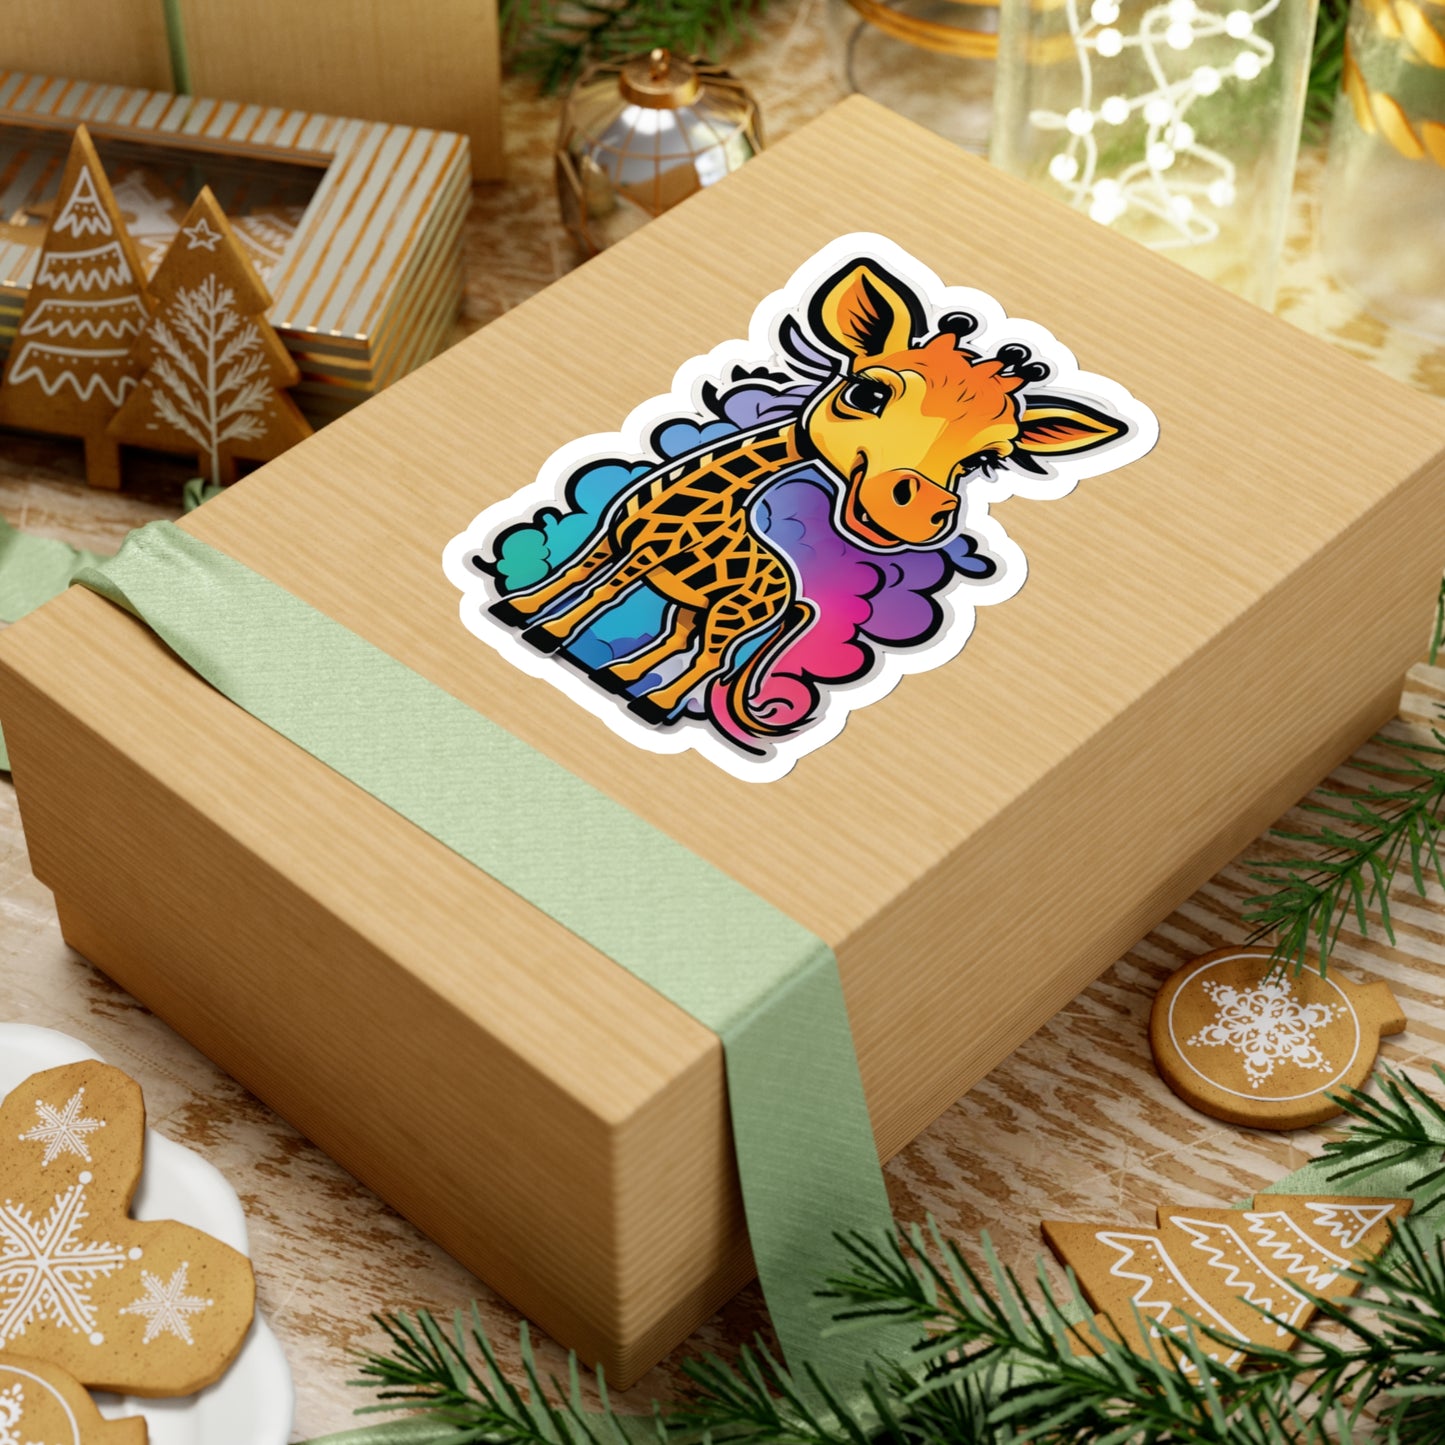 Cute Chibi Giraffe Sticker Bright Colors | Fun Stickers | Happy Stickers | Must Have Stickers | Laptop Stickers | Best Stickers | Gift Idea